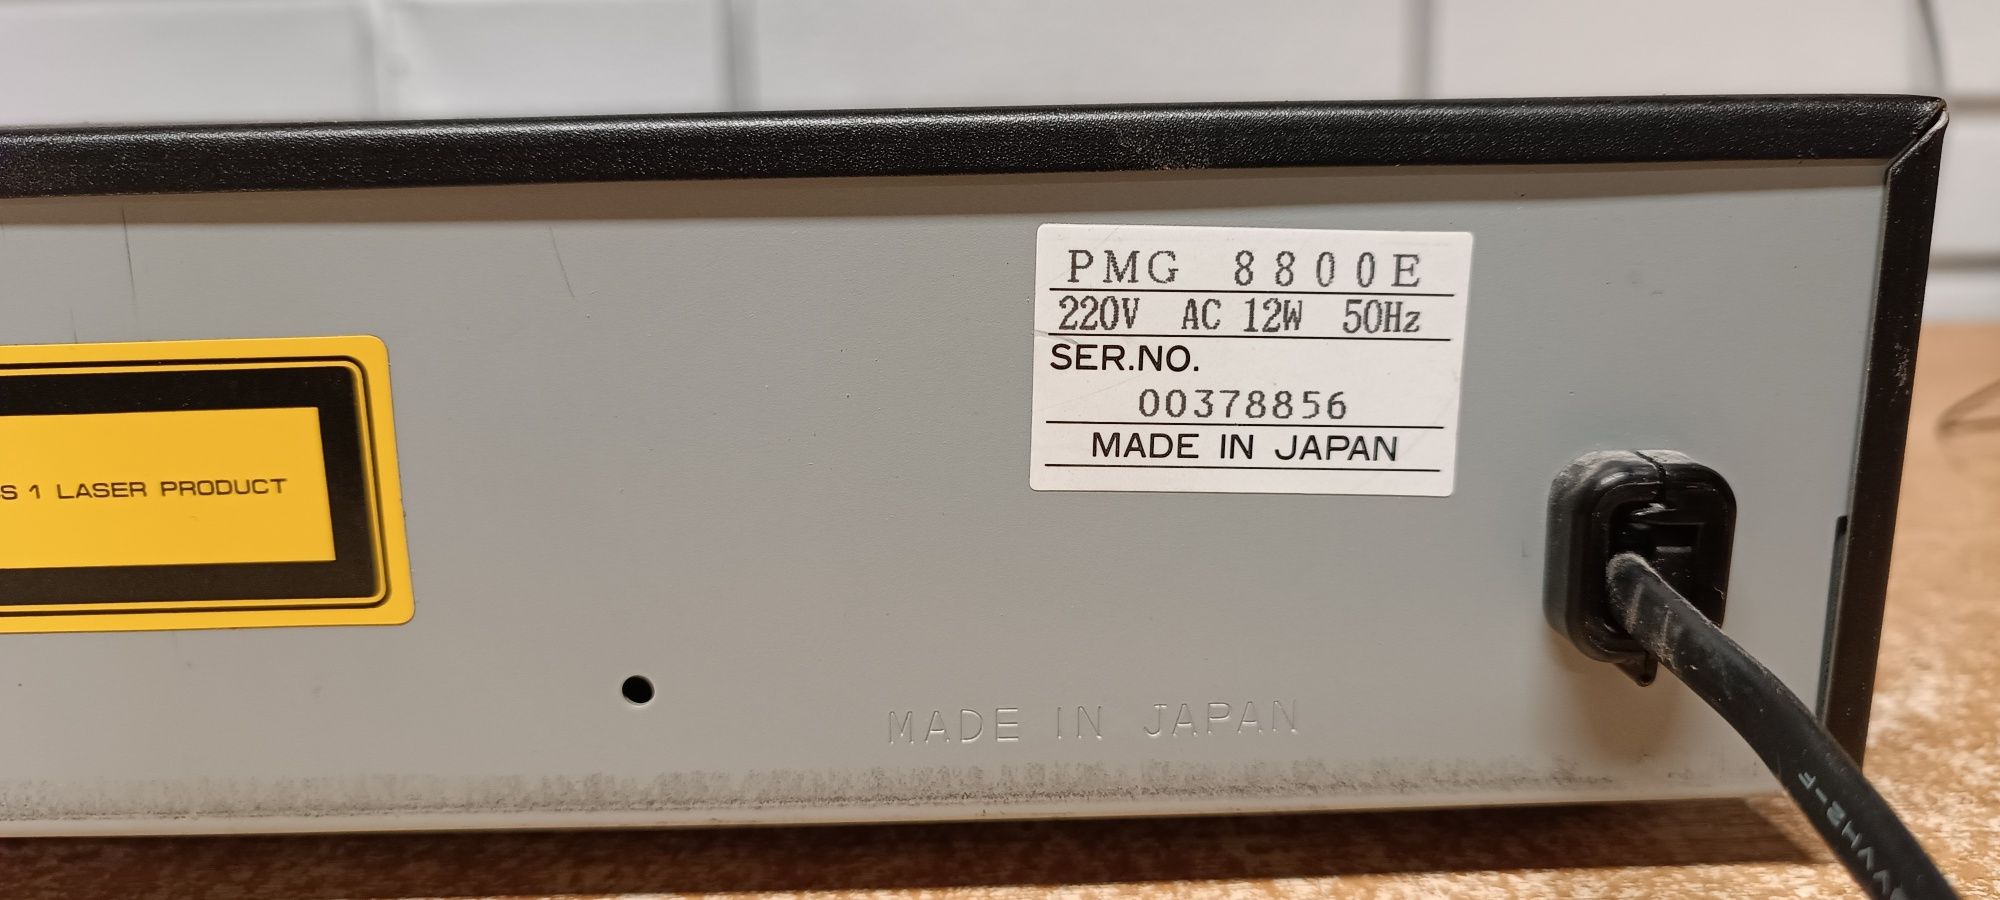 Odtwarzacz płyt cd PMG 8800E. Japan